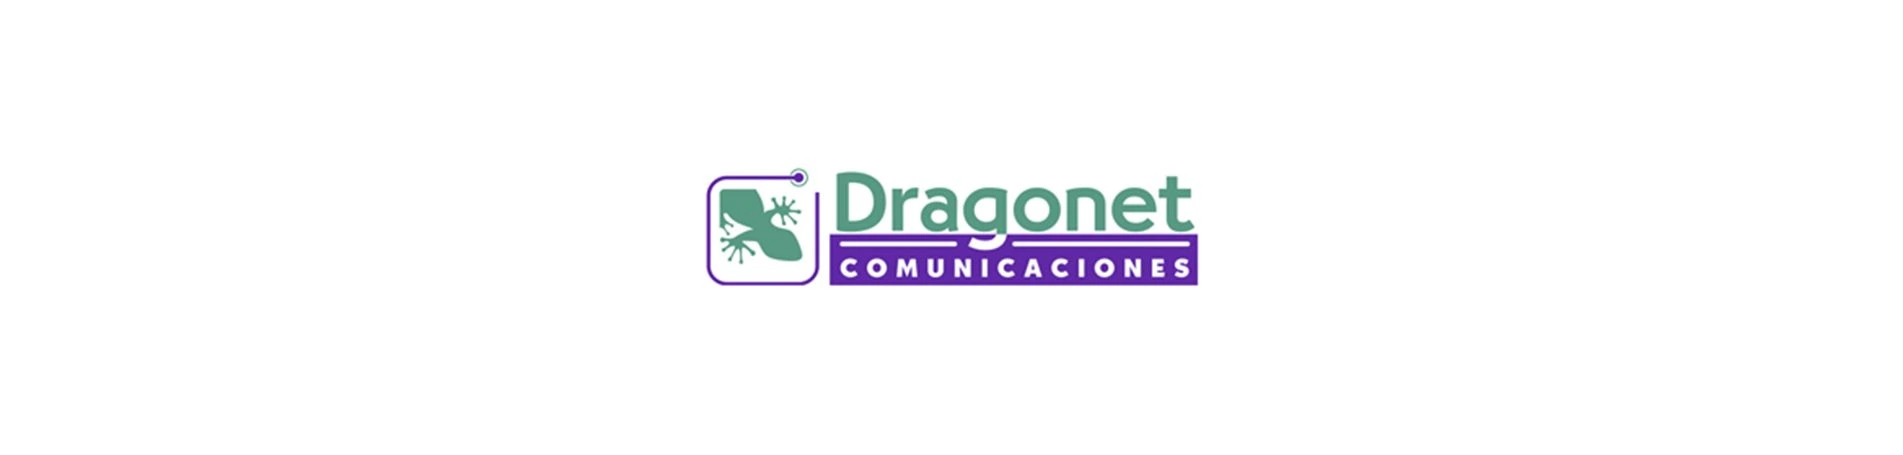 Dragonet Comunicaciones, nuevo cliente marketing outsourcing en Valencia